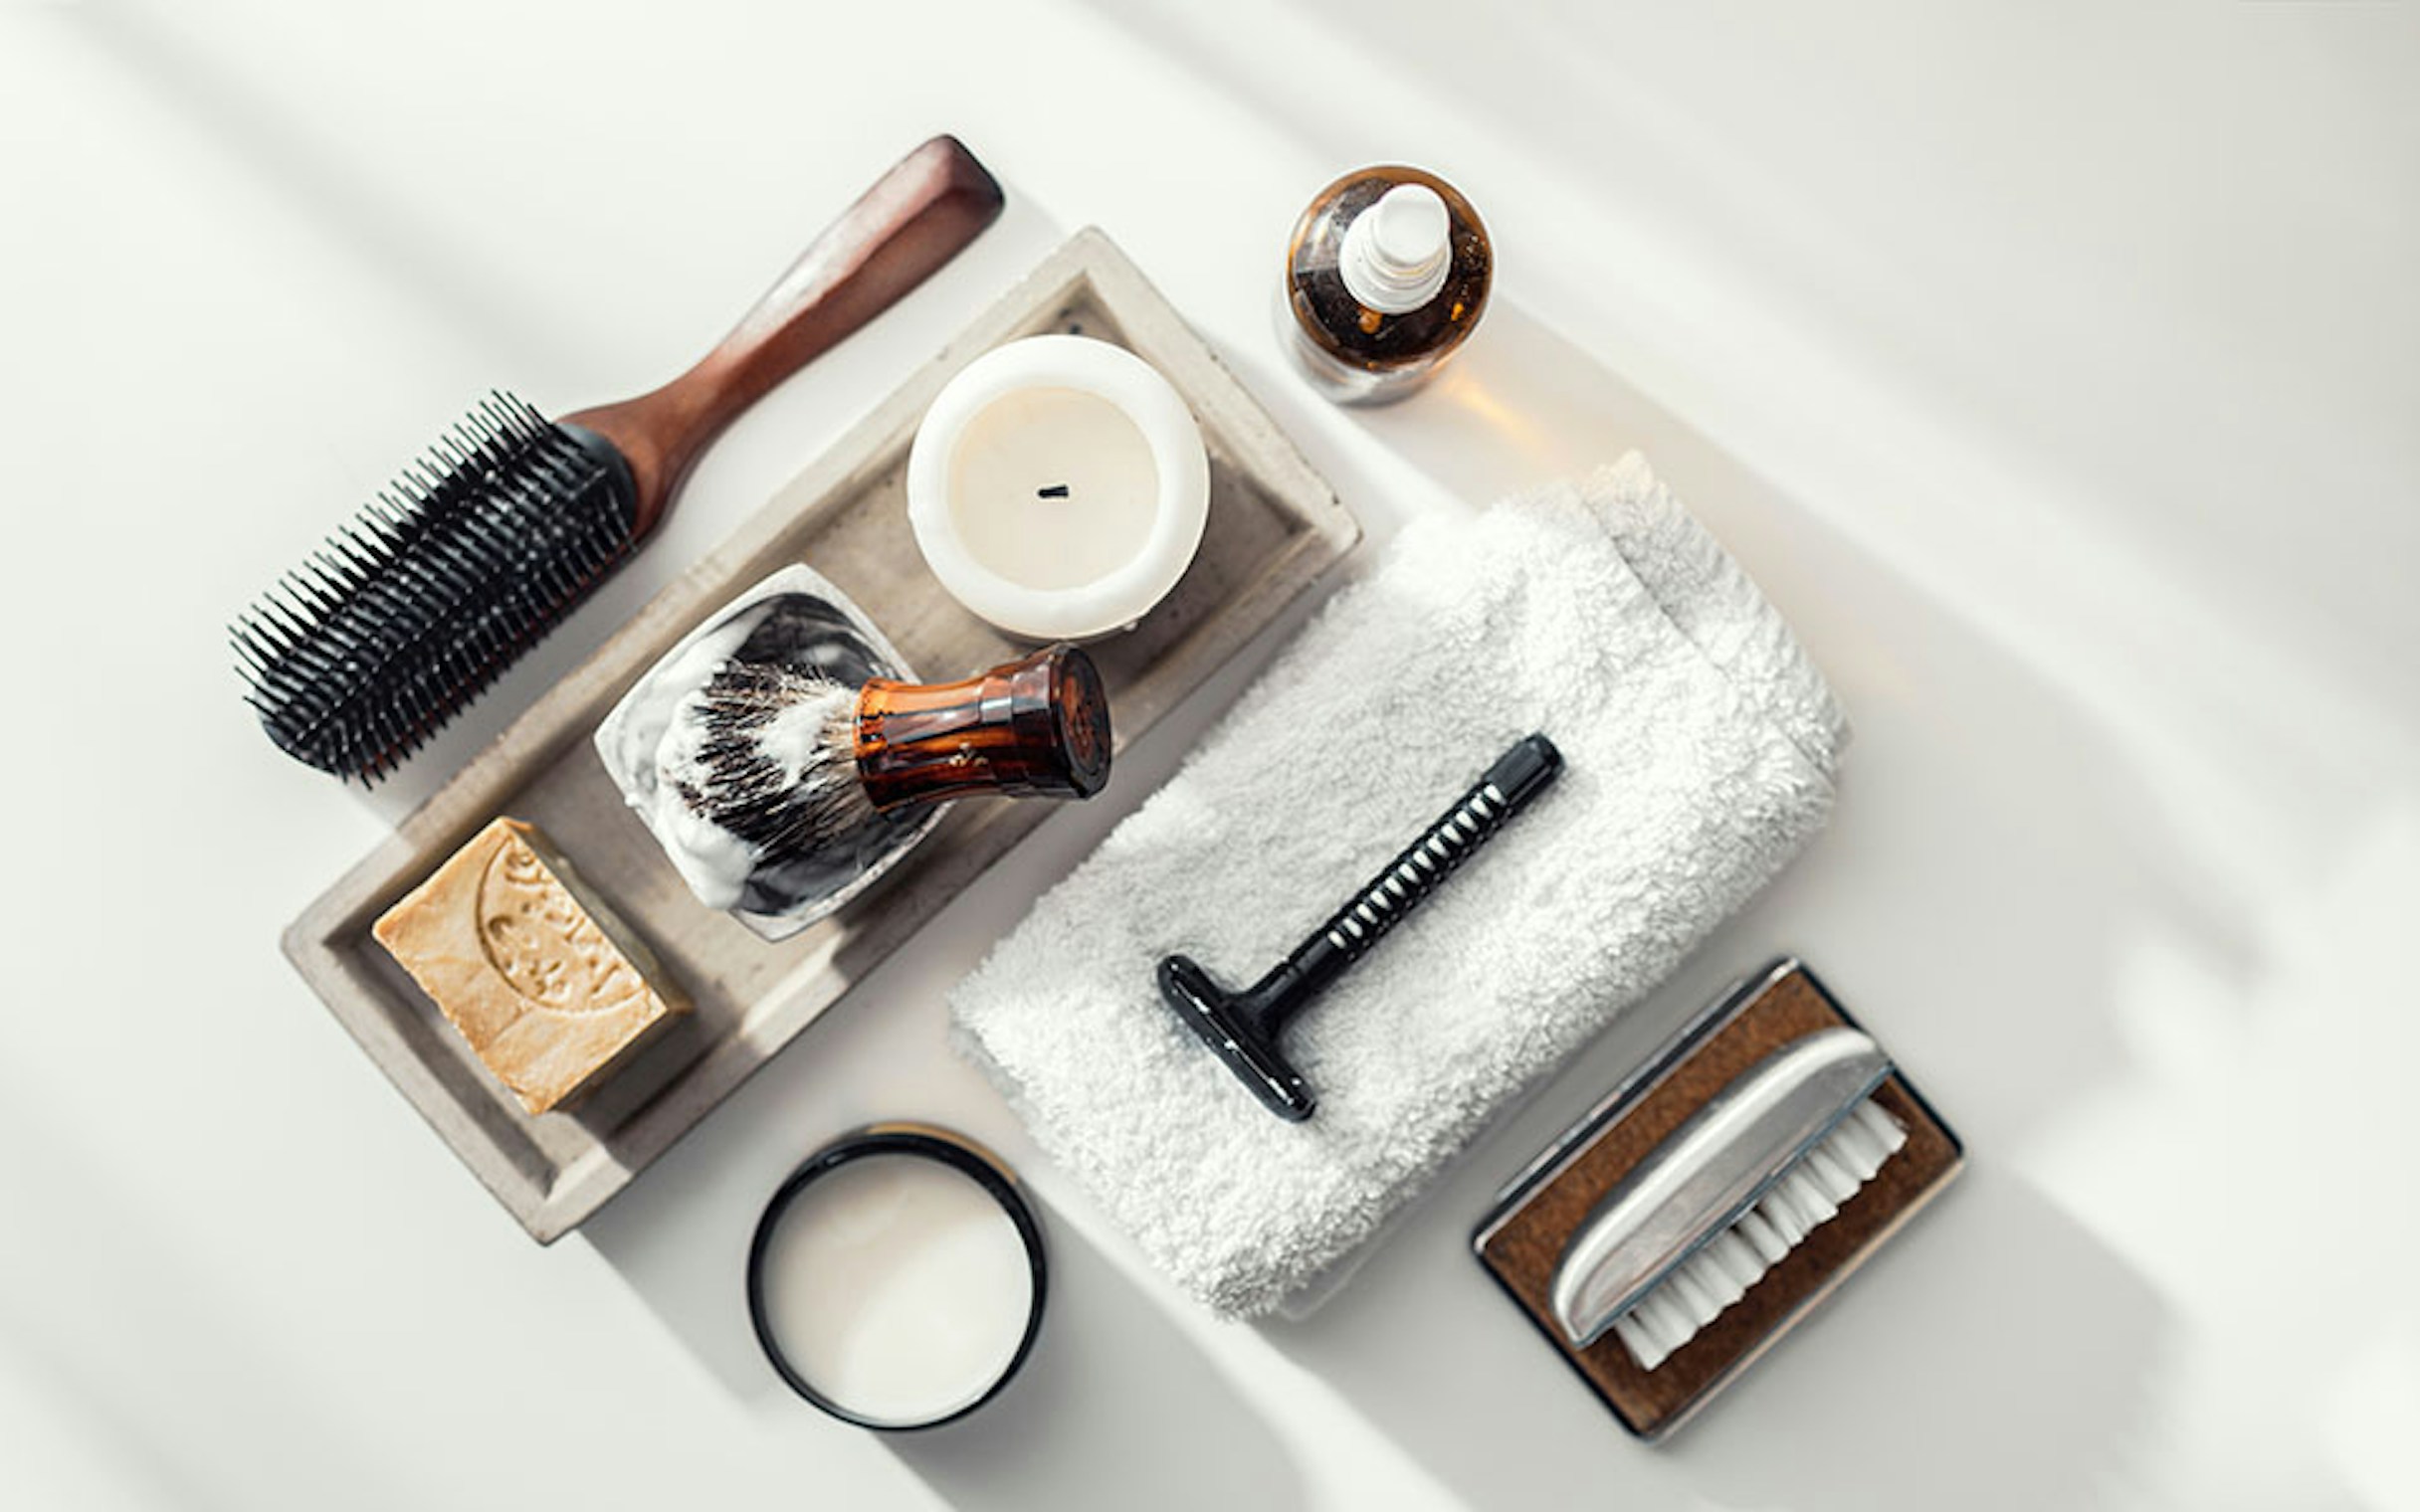 Hairbrush and shaving items